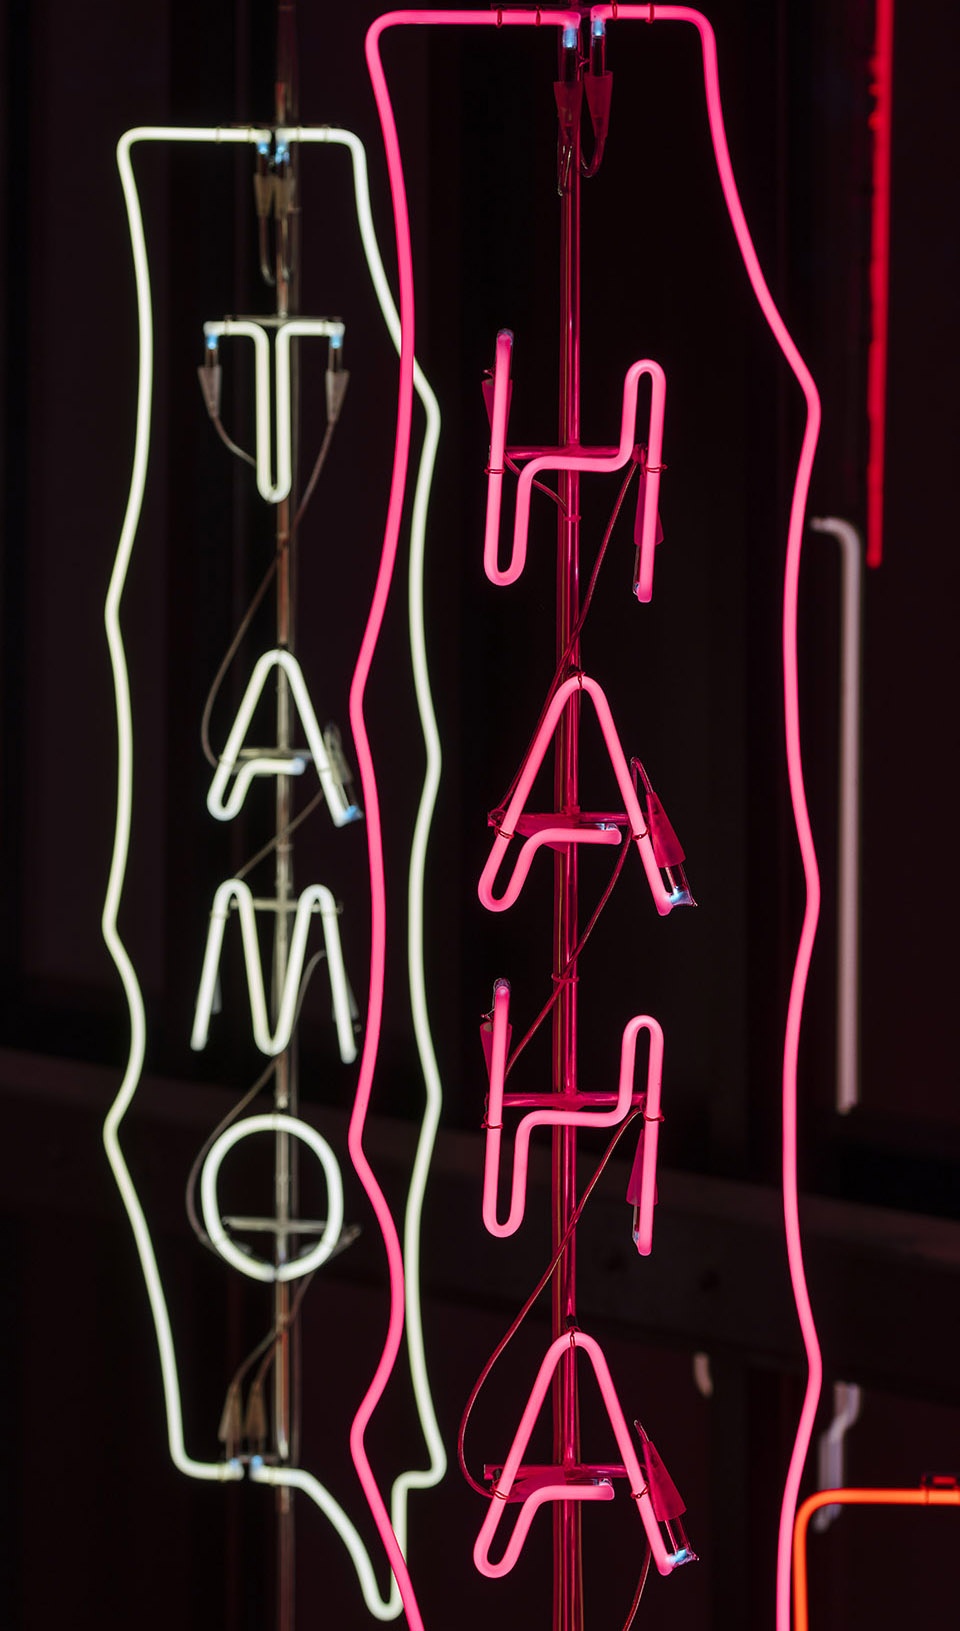 YOYO永久灯光艺术装置，马德里/流行文化与社交媒体的具象化体现-21